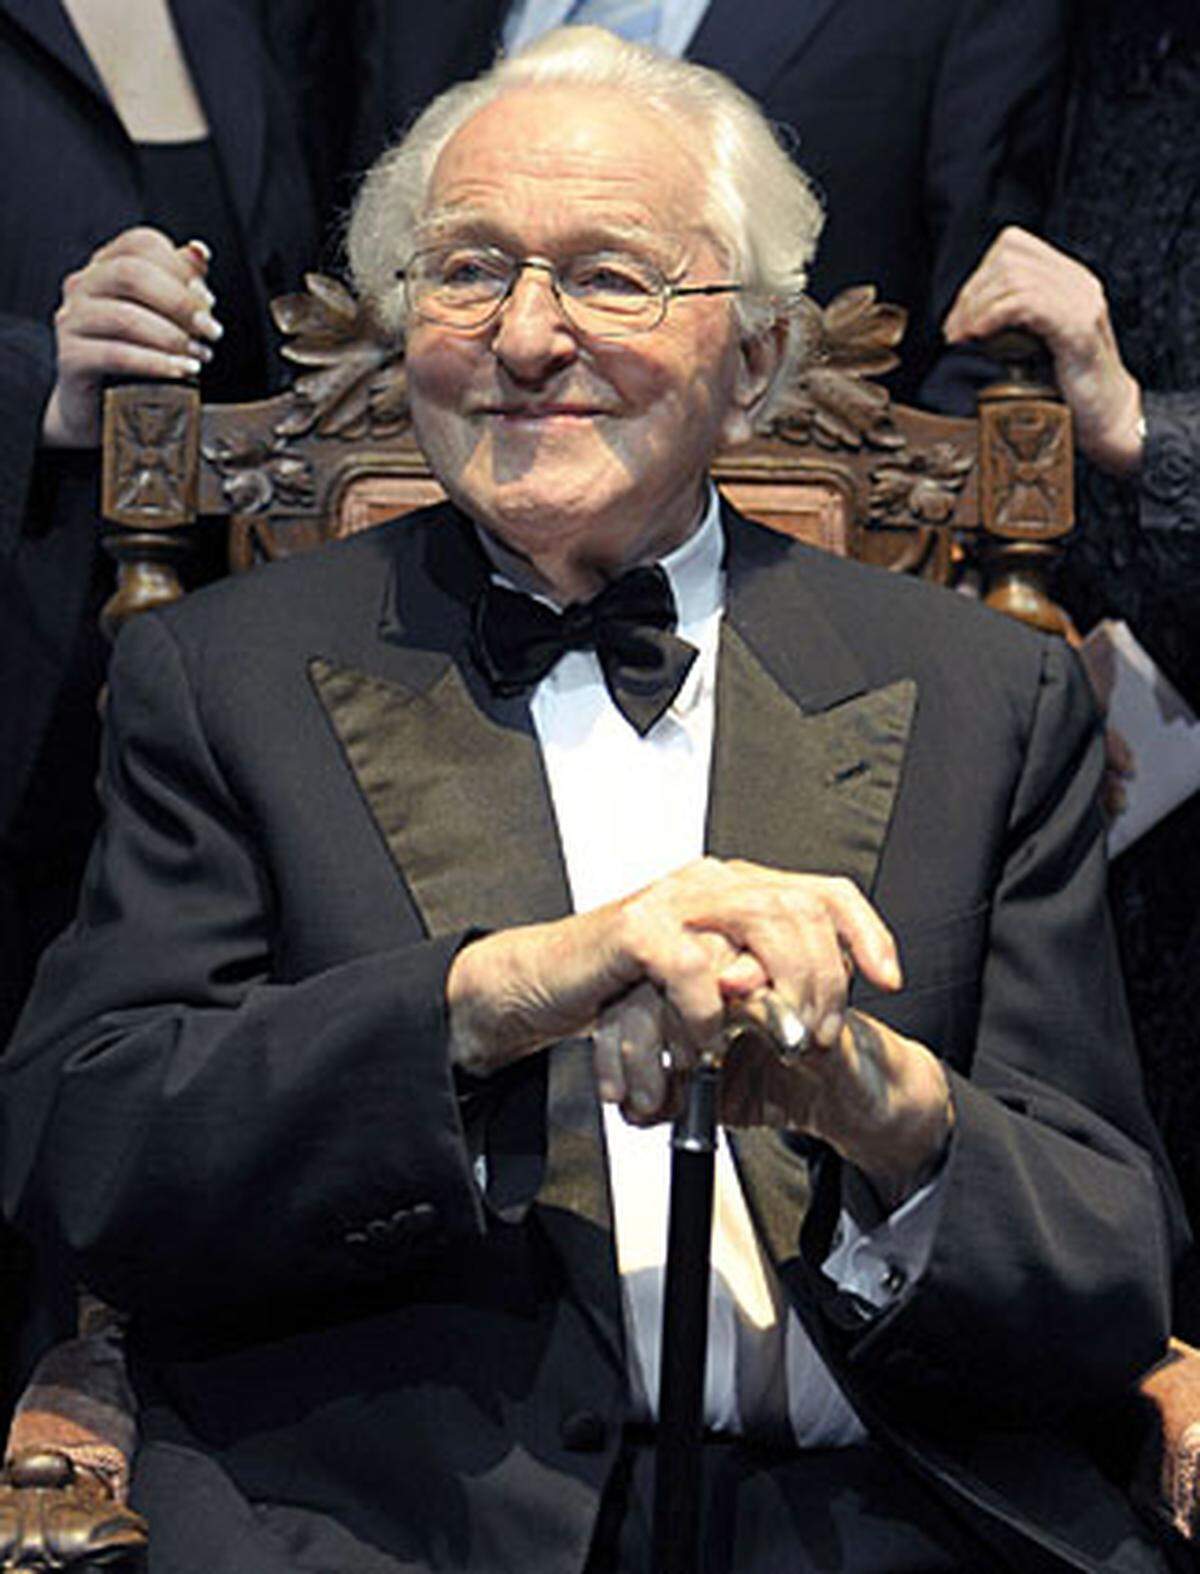 Am 21. März 2010 starb der langjährige Bayreuth-Leiter und Komponisten-Enkel Wolfgang Wagner  im Alter von 90 Jahren. Mehr als ein halbes Jahrhundert lang lenkte er die Geschicke des weltweit renommiertesten deutschen Musikfestivals. Er sei friedlich eingeschlafen, sagte seine Tochter Katharina Wagner.